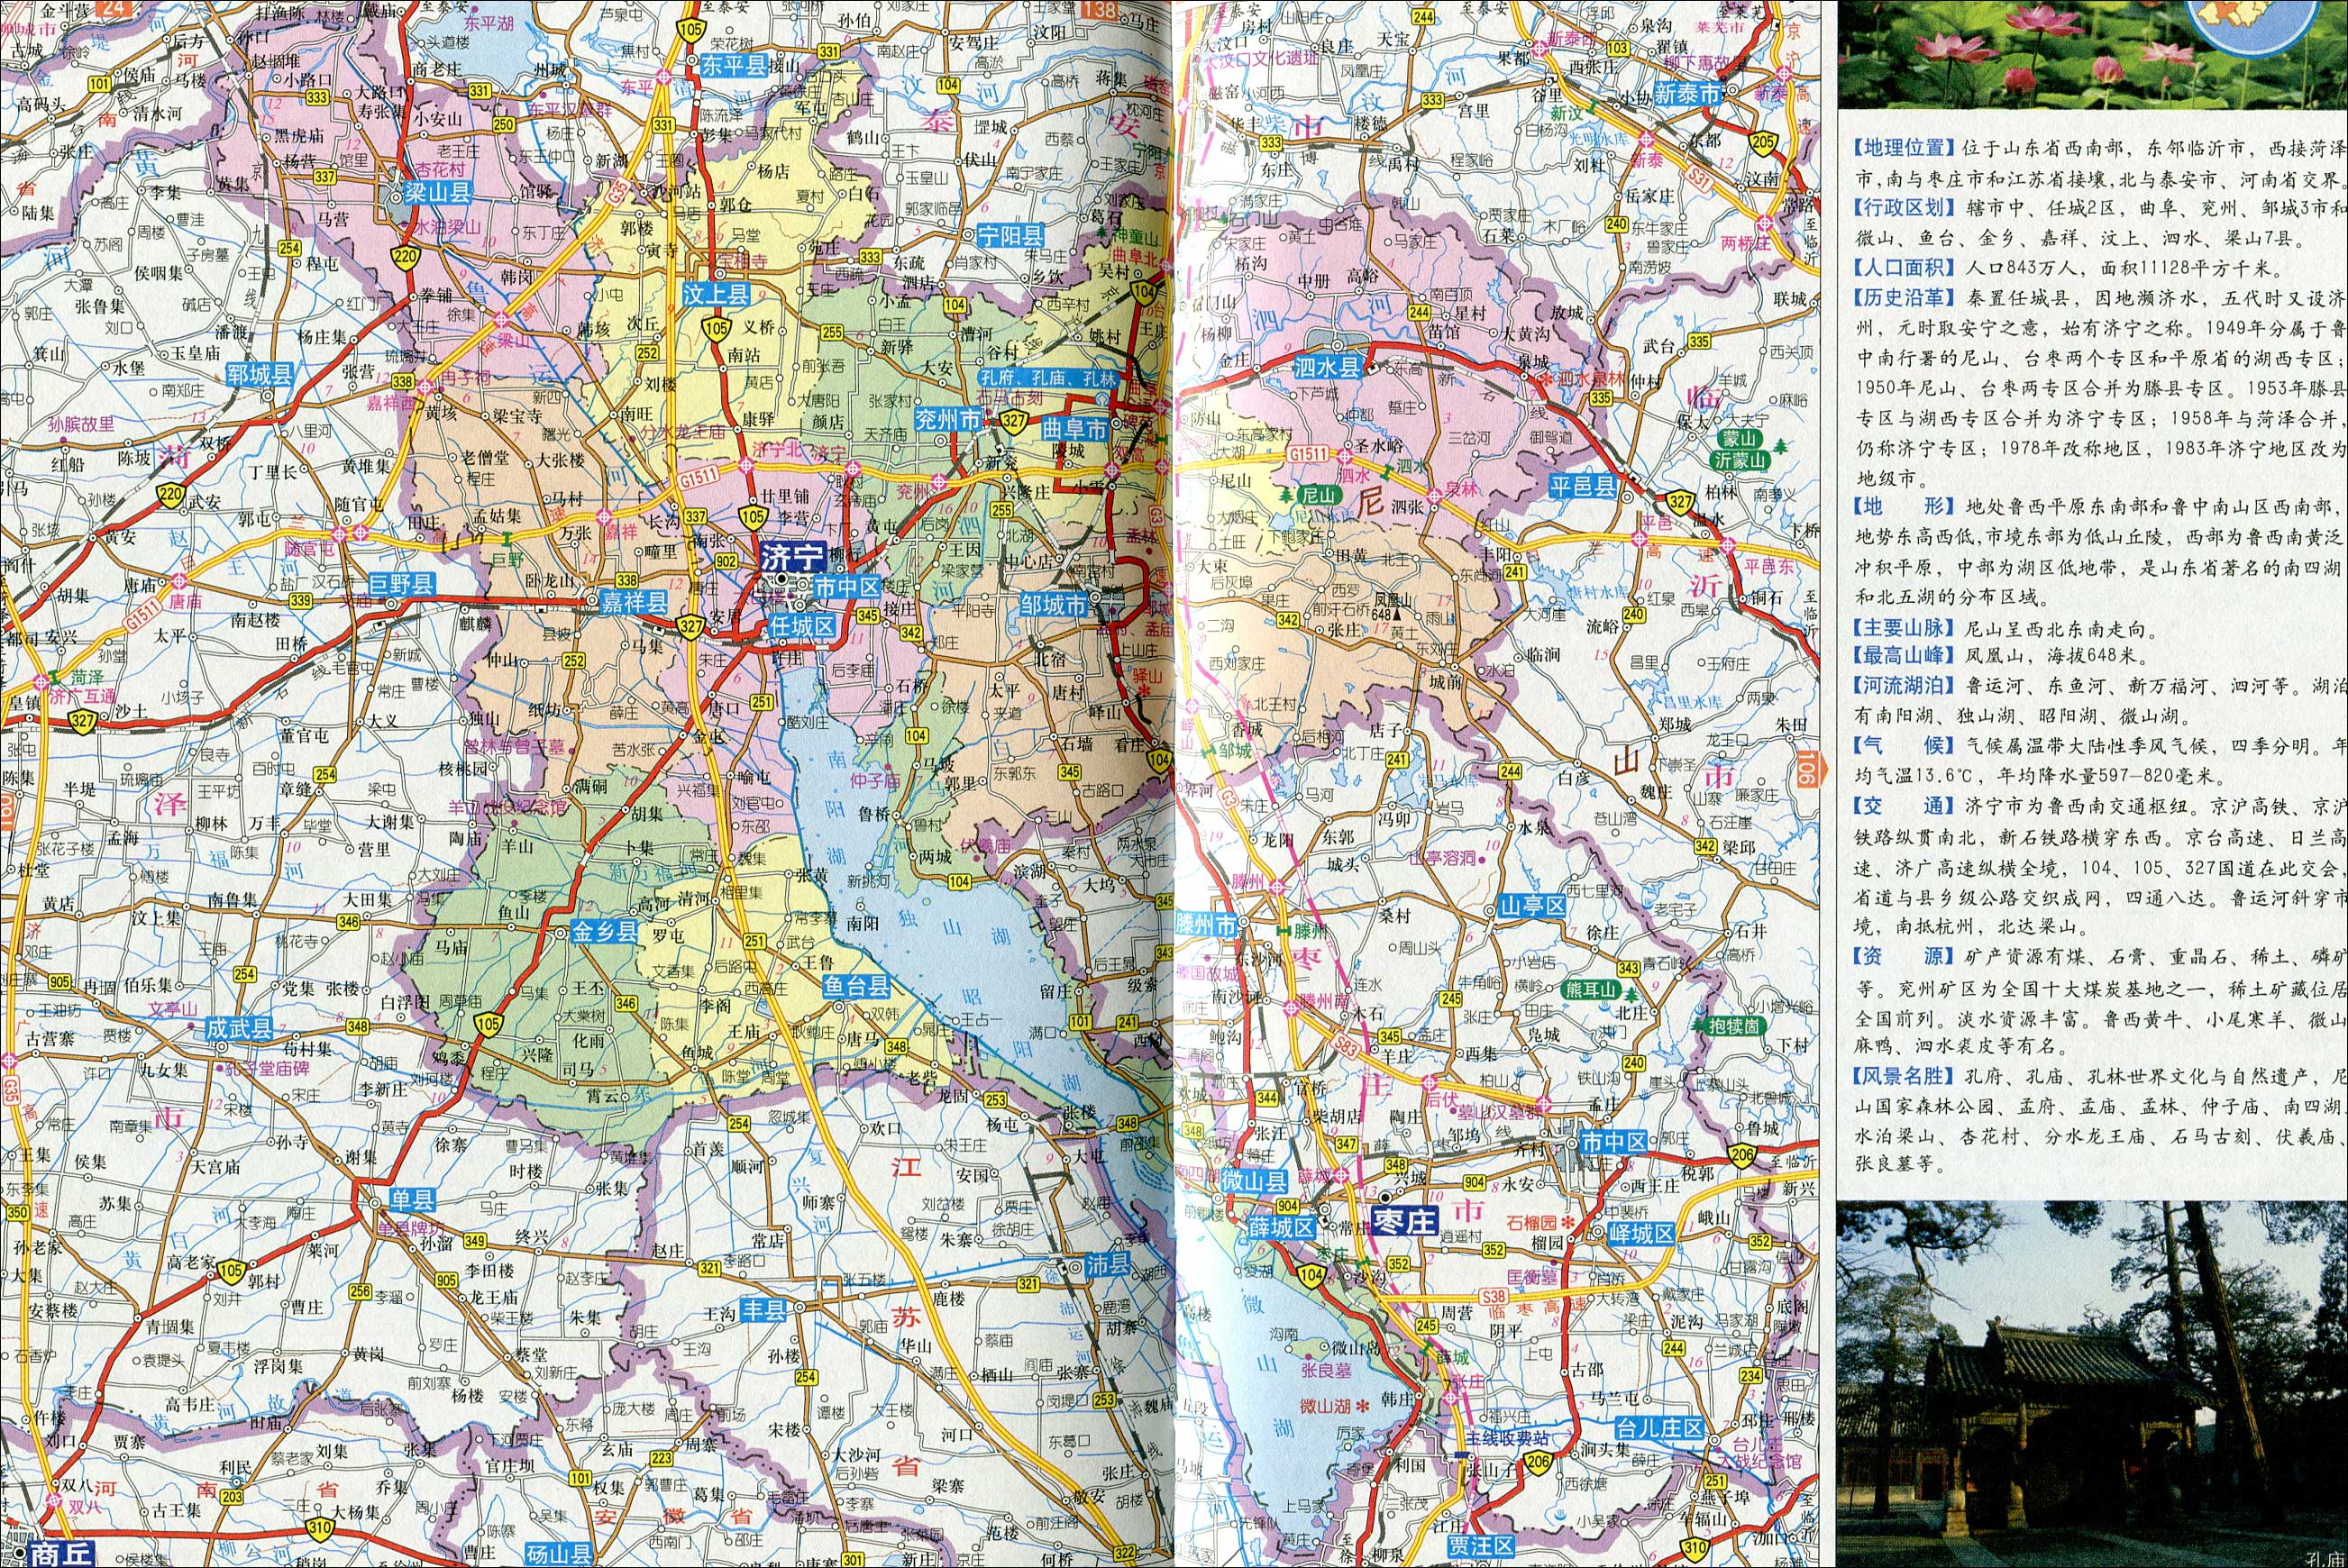 上一幅地图: 邹城市地图 | 济宁市 | 下一幅地图: 济宁市建成区面积61